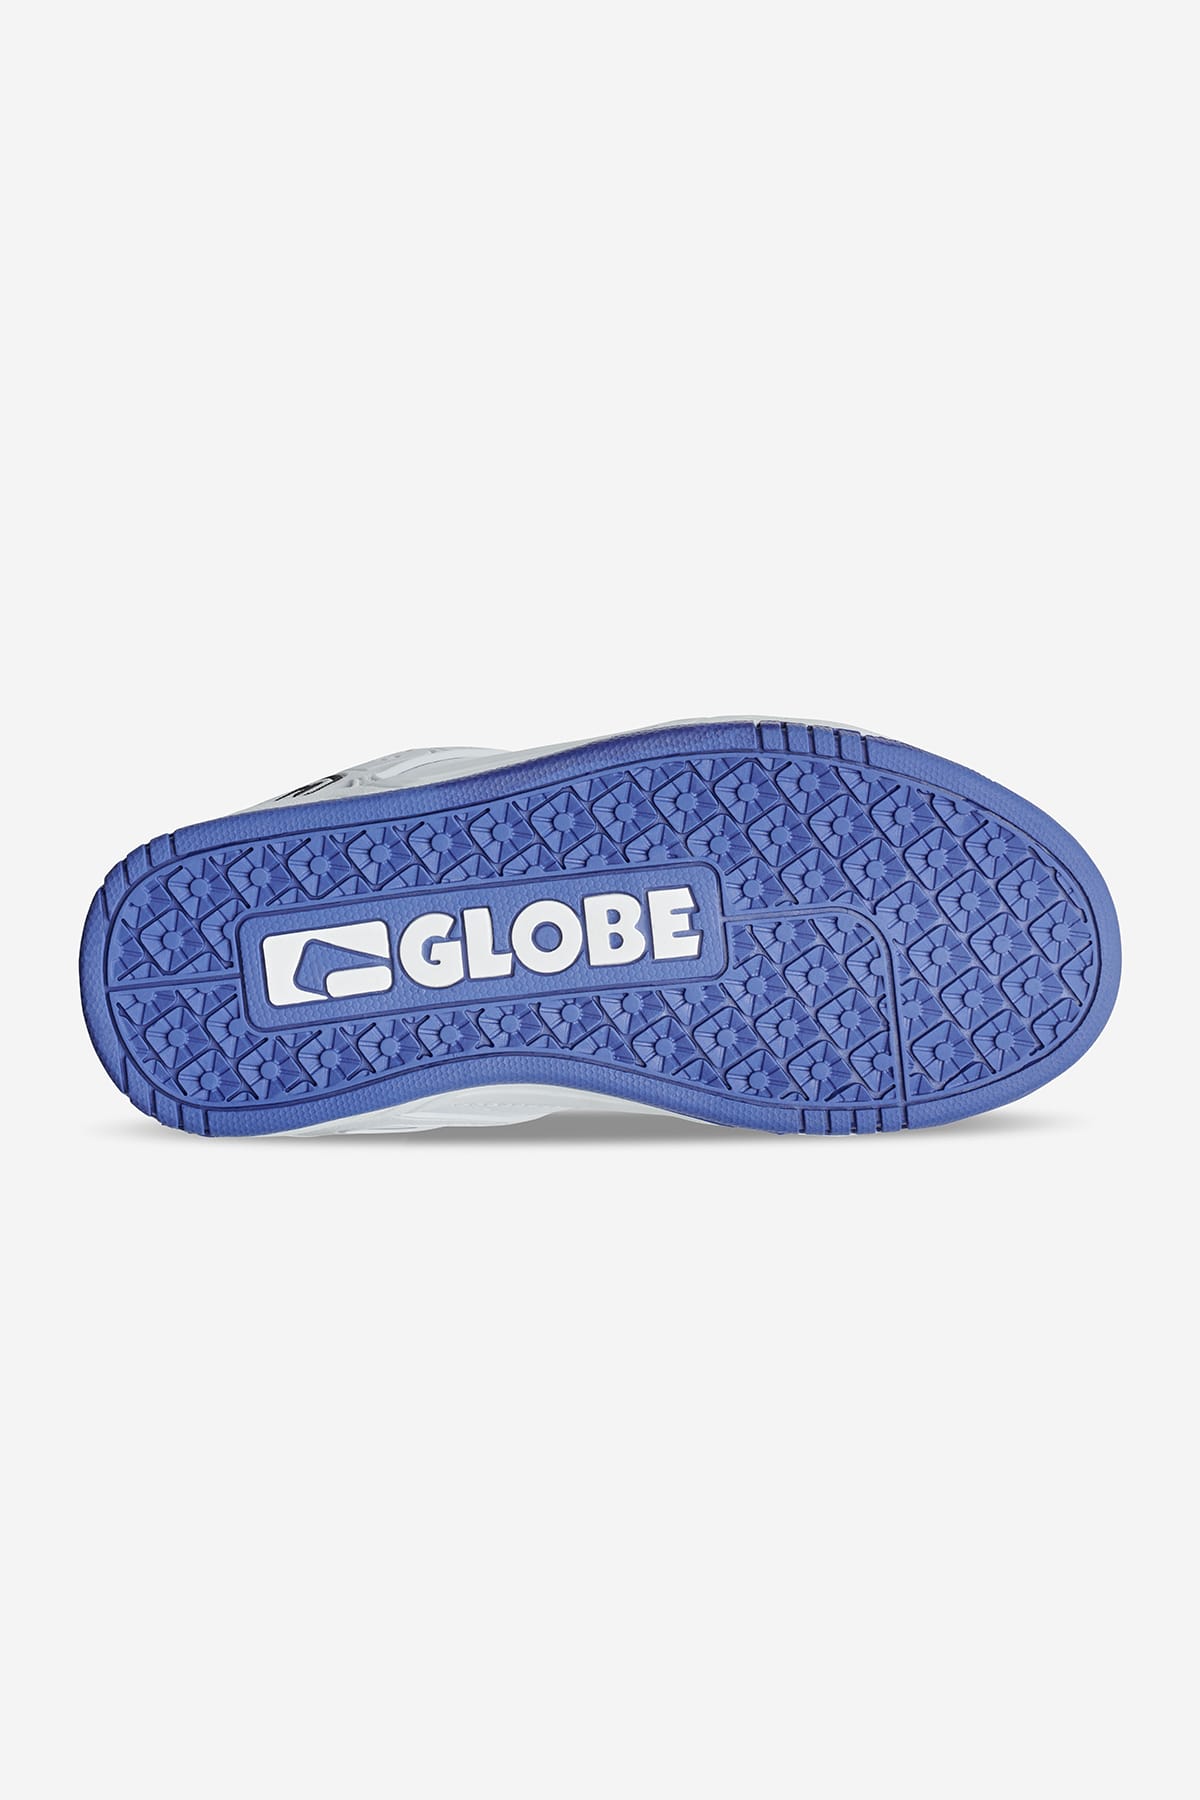 Globe - Tilt Kids - White/Cobalt - skateboard Shoes